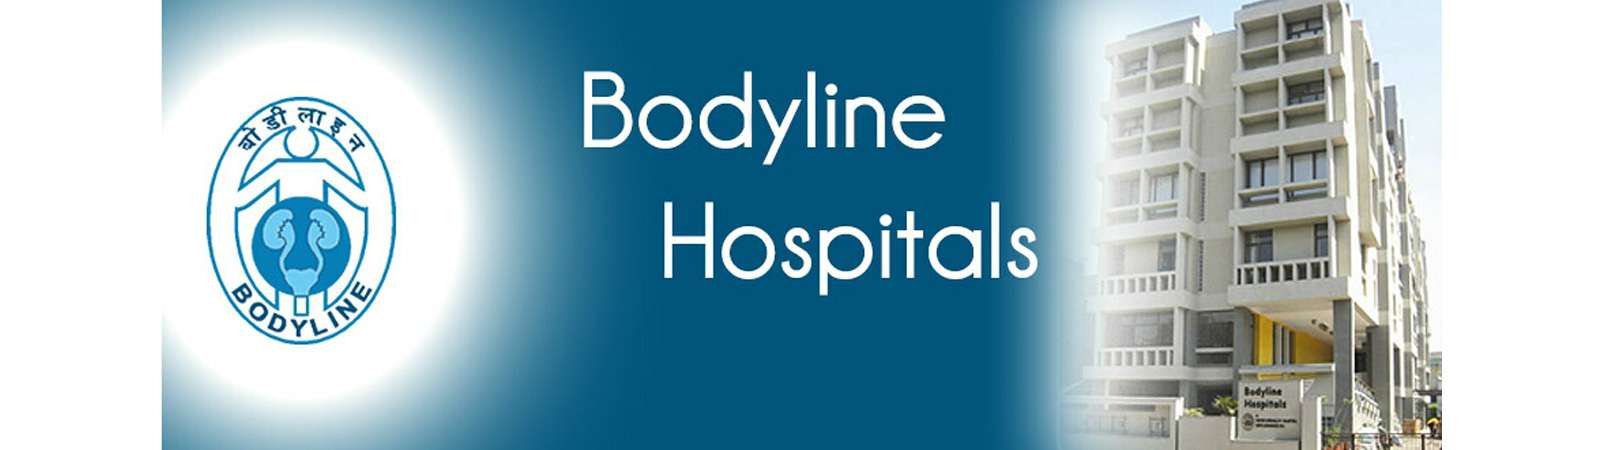 Bodyline Hospital